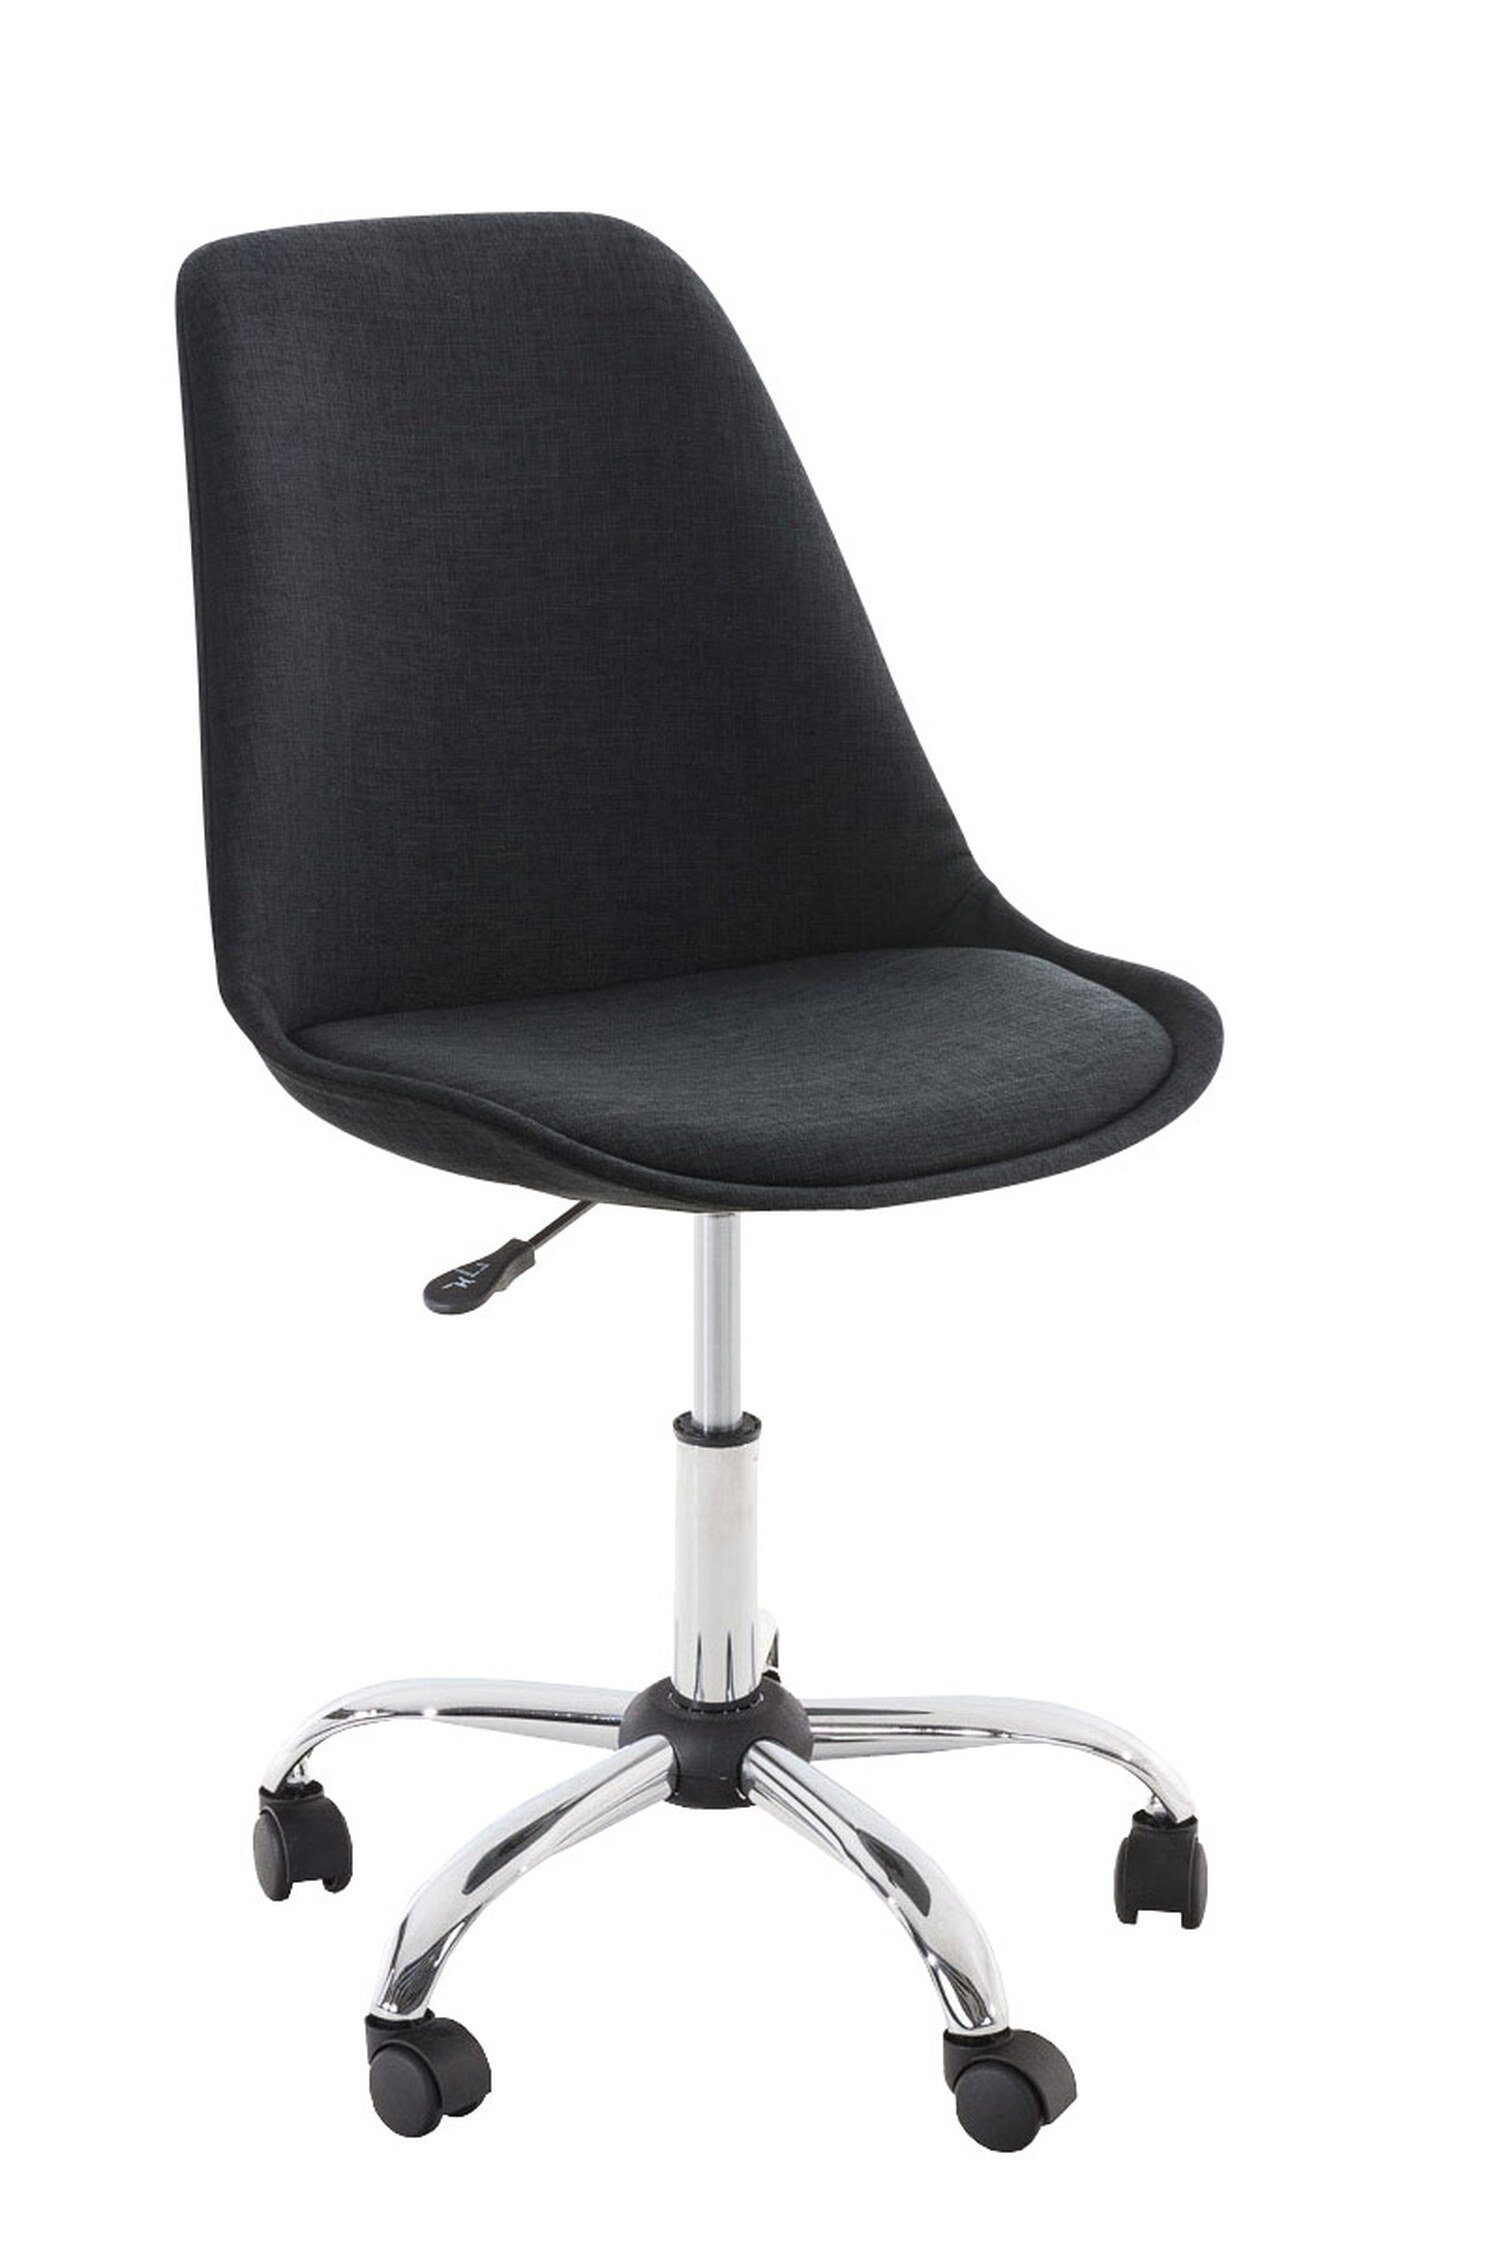 TPFLiving Bürostuhl Pegasus mit bequemer Rückenlehne (Schreibtischstuhl, Drehstuhl, Konferenzstuhl, Chefsessel), Gestell: Metall chrom - Sitzfläche: Stoff schwarz